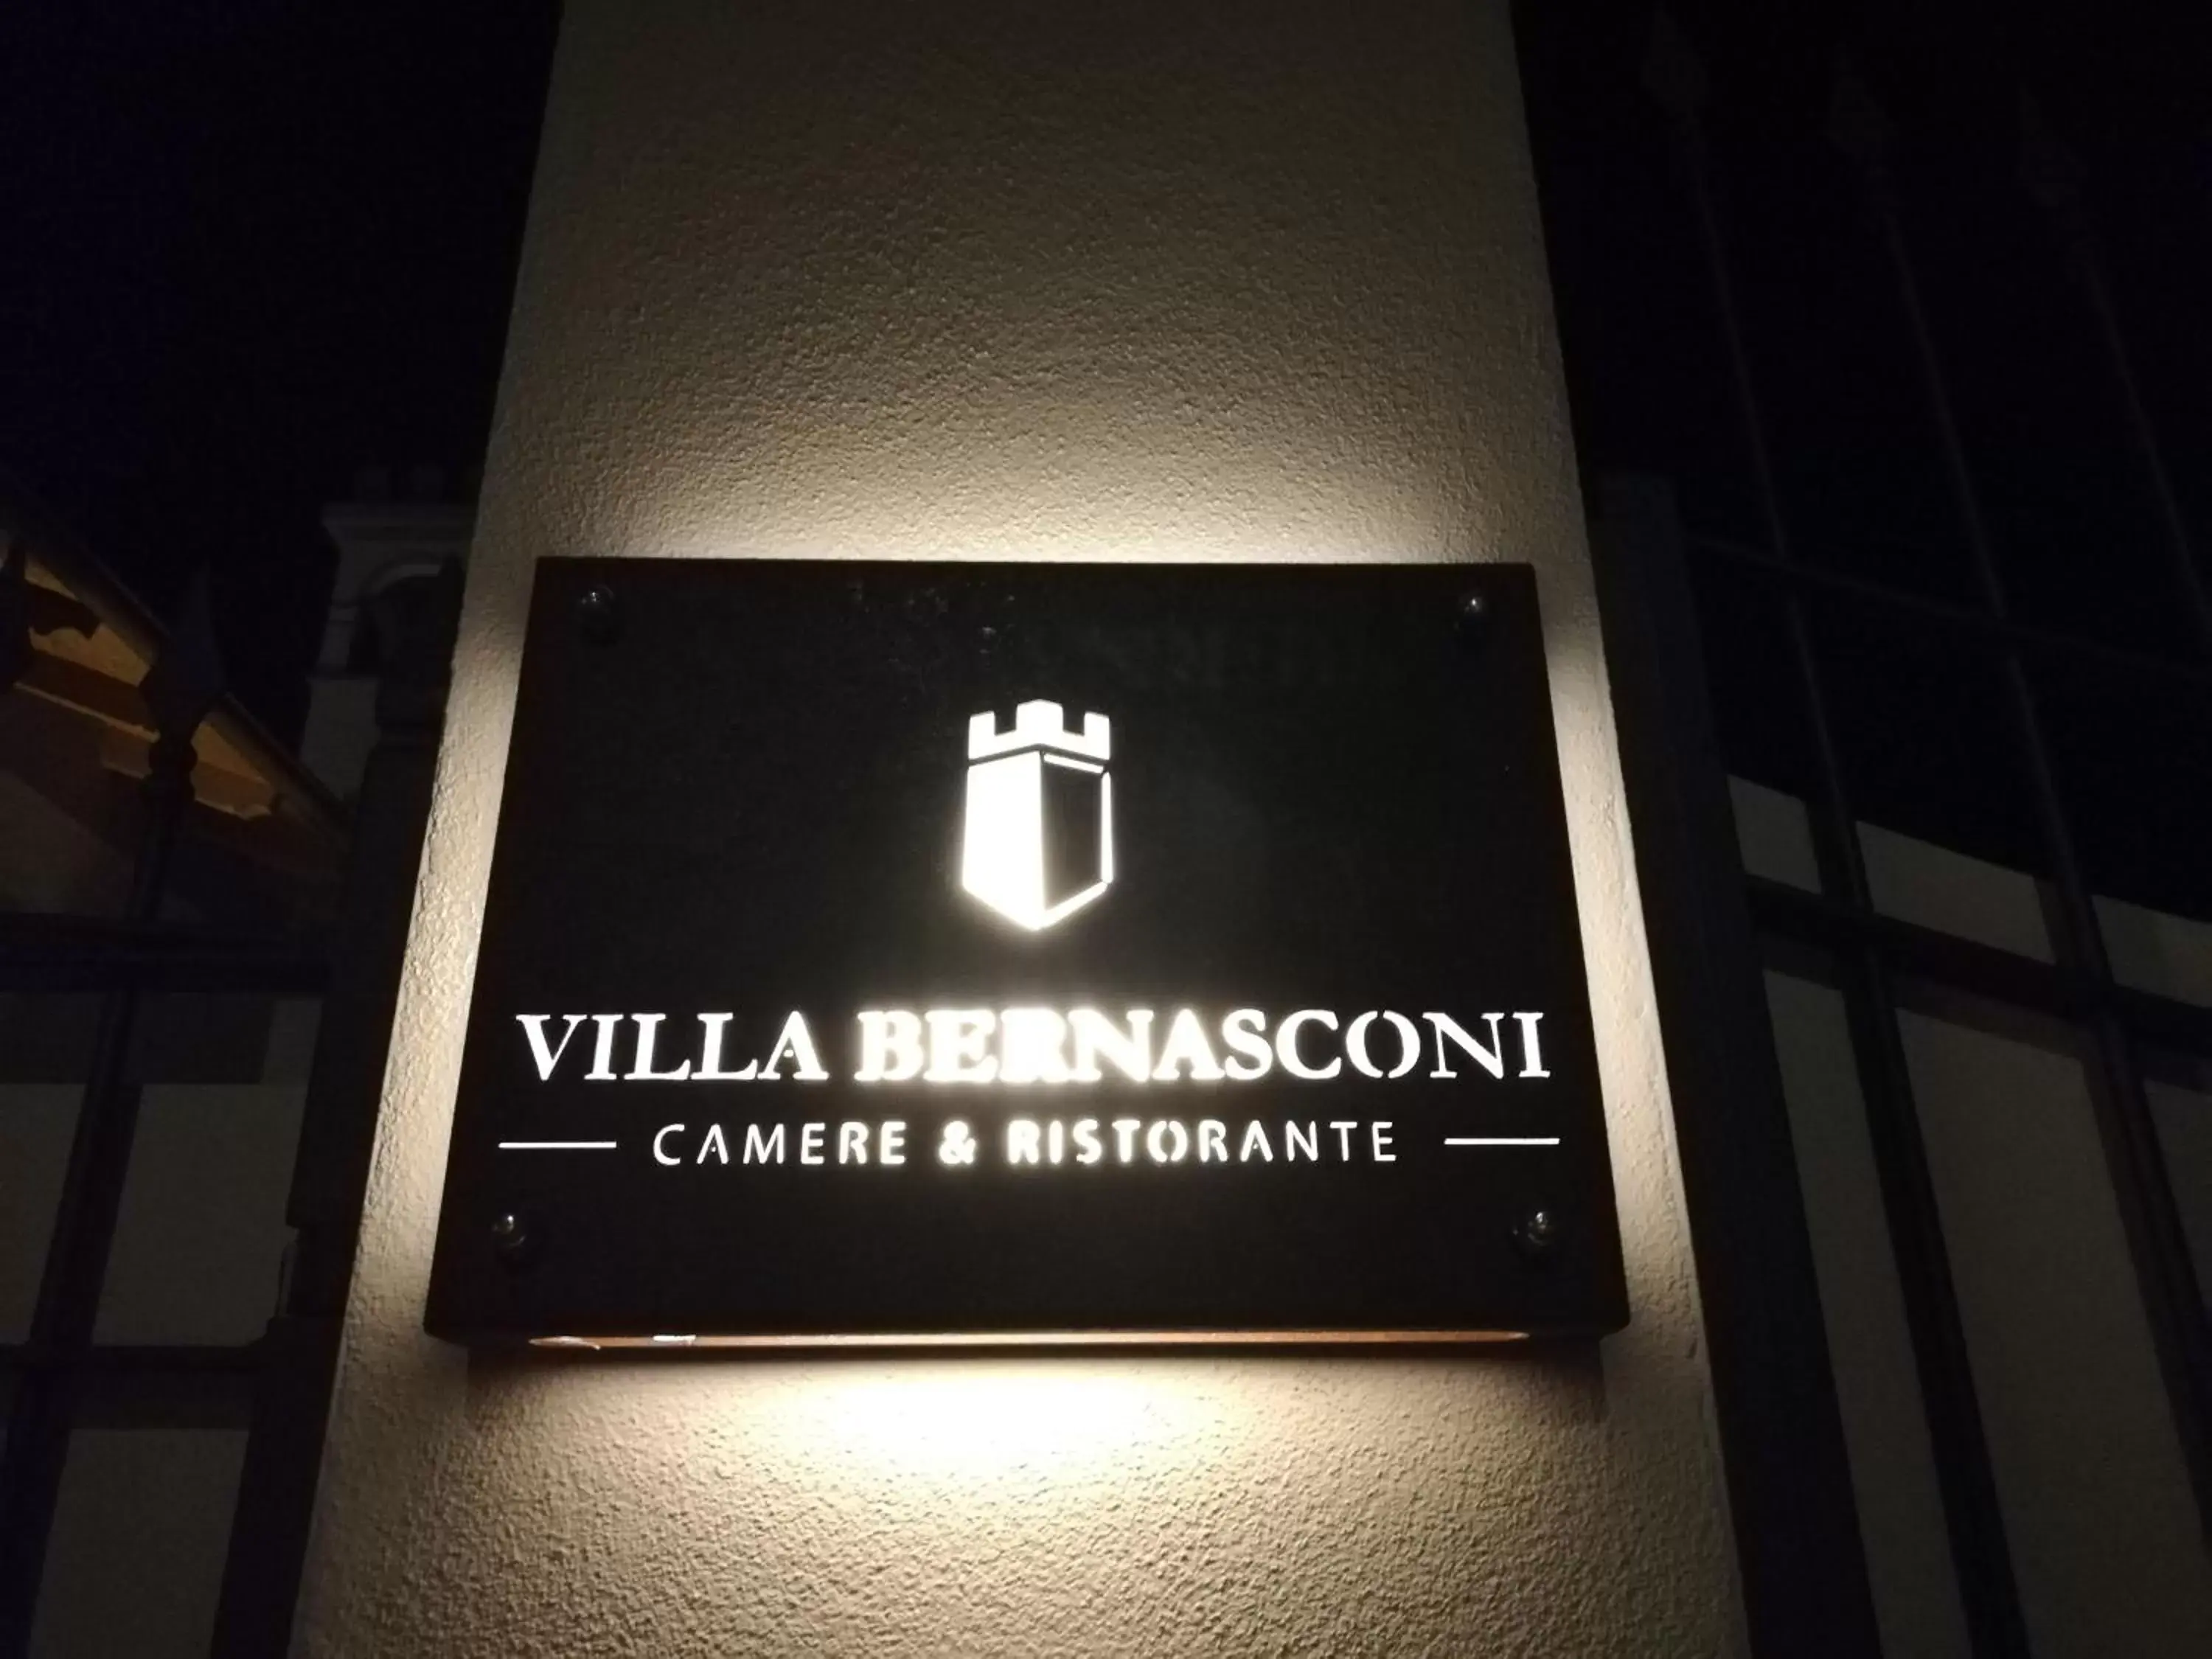 Property logo or sign in VILLA BERNASCONI